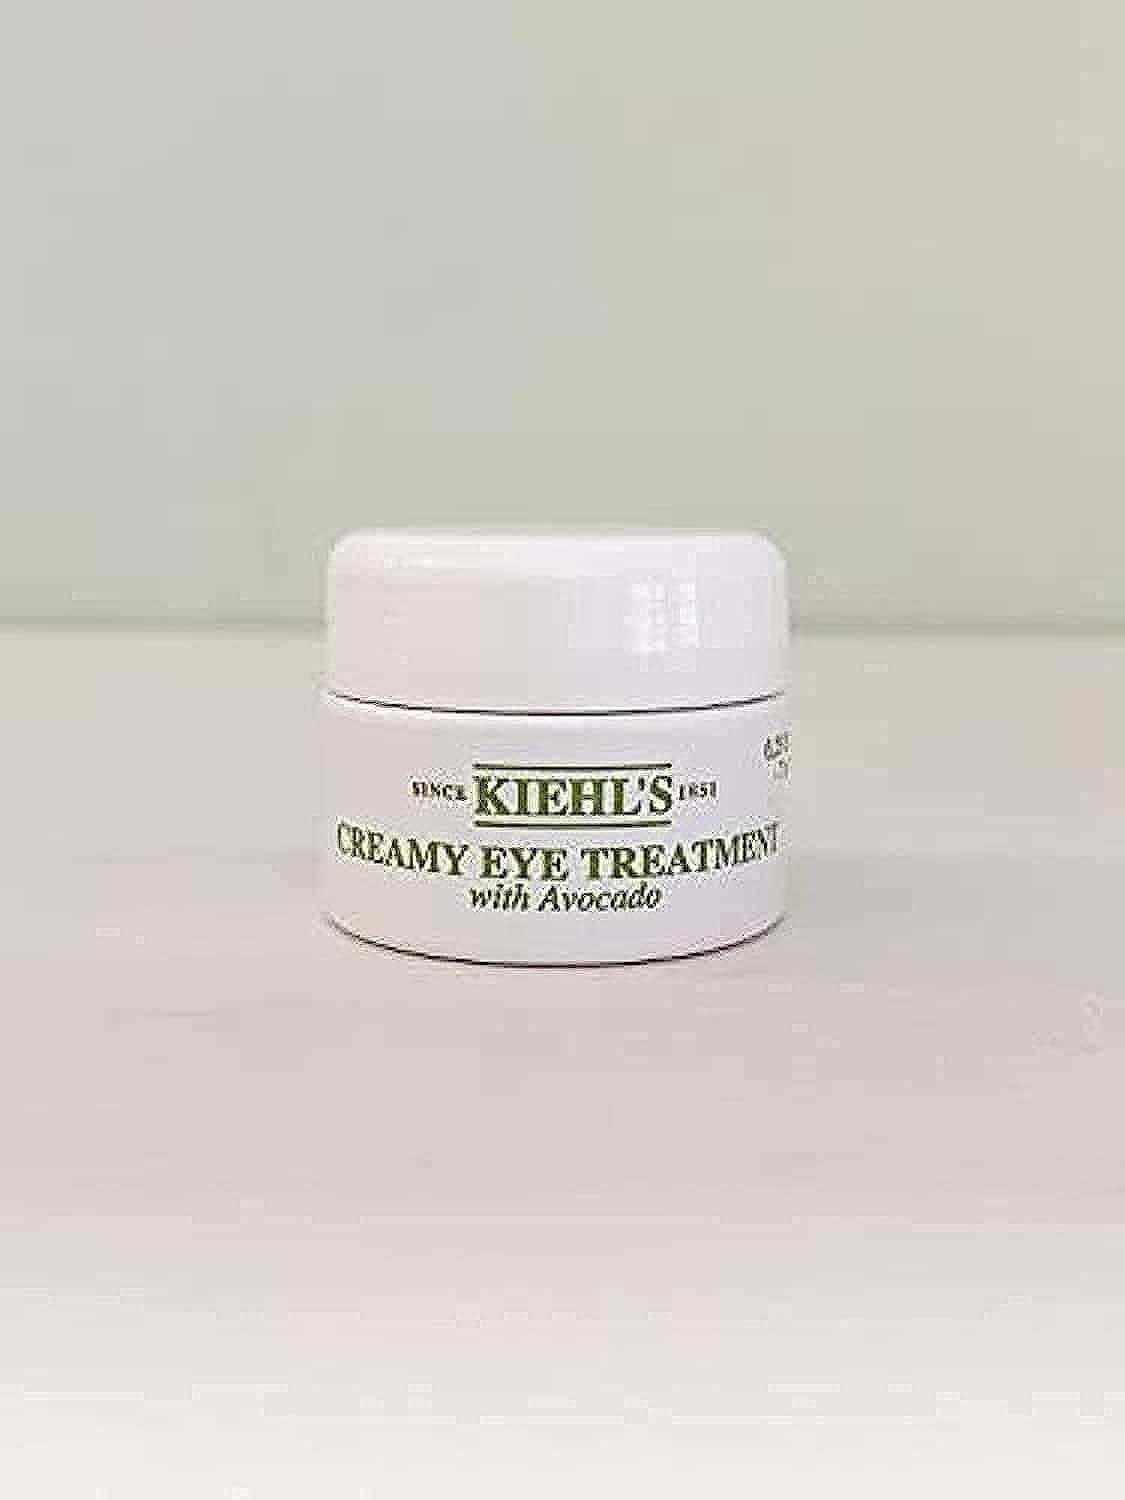 kiehl's creamy eye treatment with avocado - 7 ml, travel size